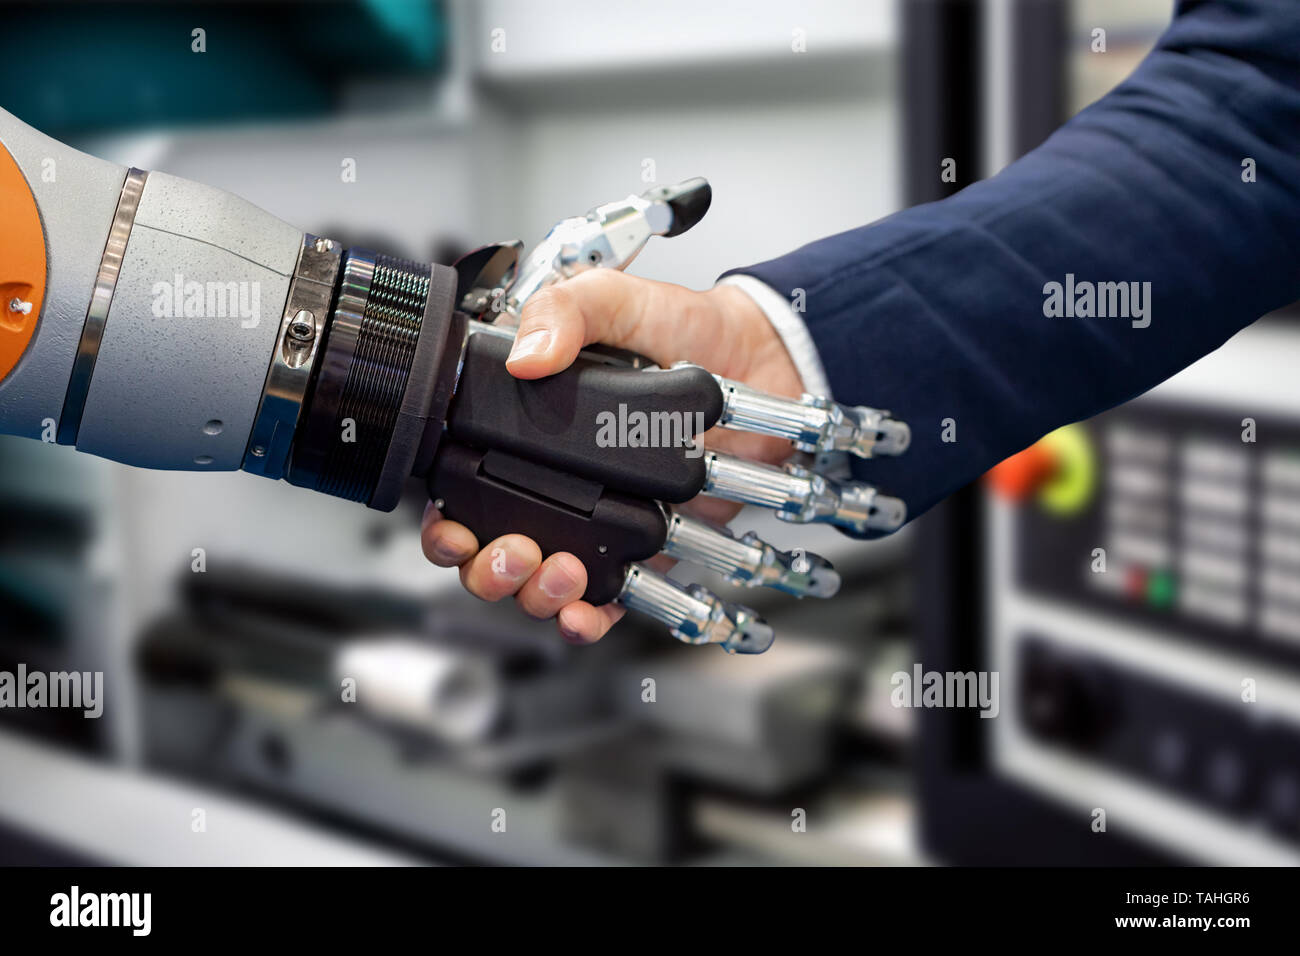 Main d'un businessman shaking hands with a robot Android. Le concept de l'interaction humaine avec l'intelligence artificielle. Banque D'Images